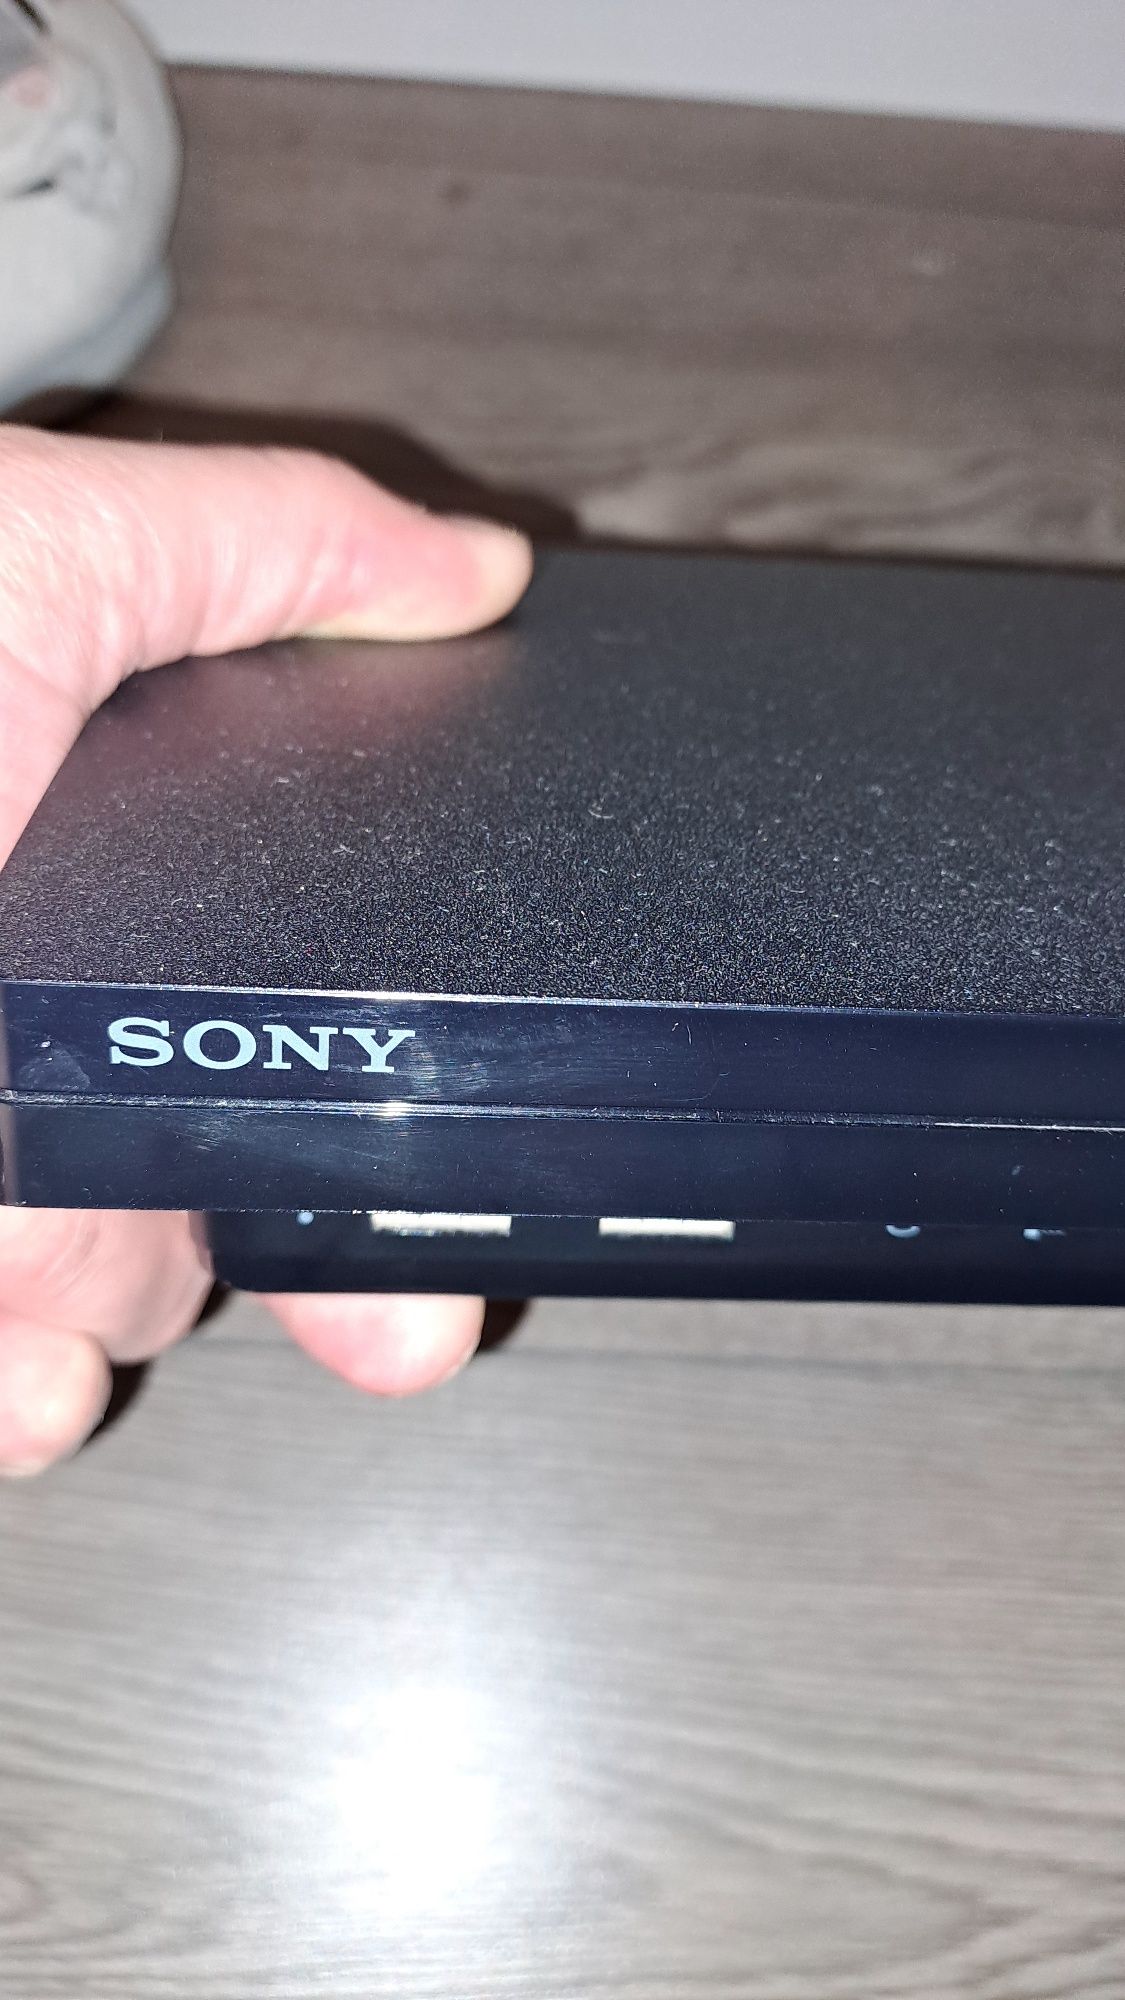 Vând PS 3 impecabil cu 2 manete Sony  originale și cabluri preț de 400